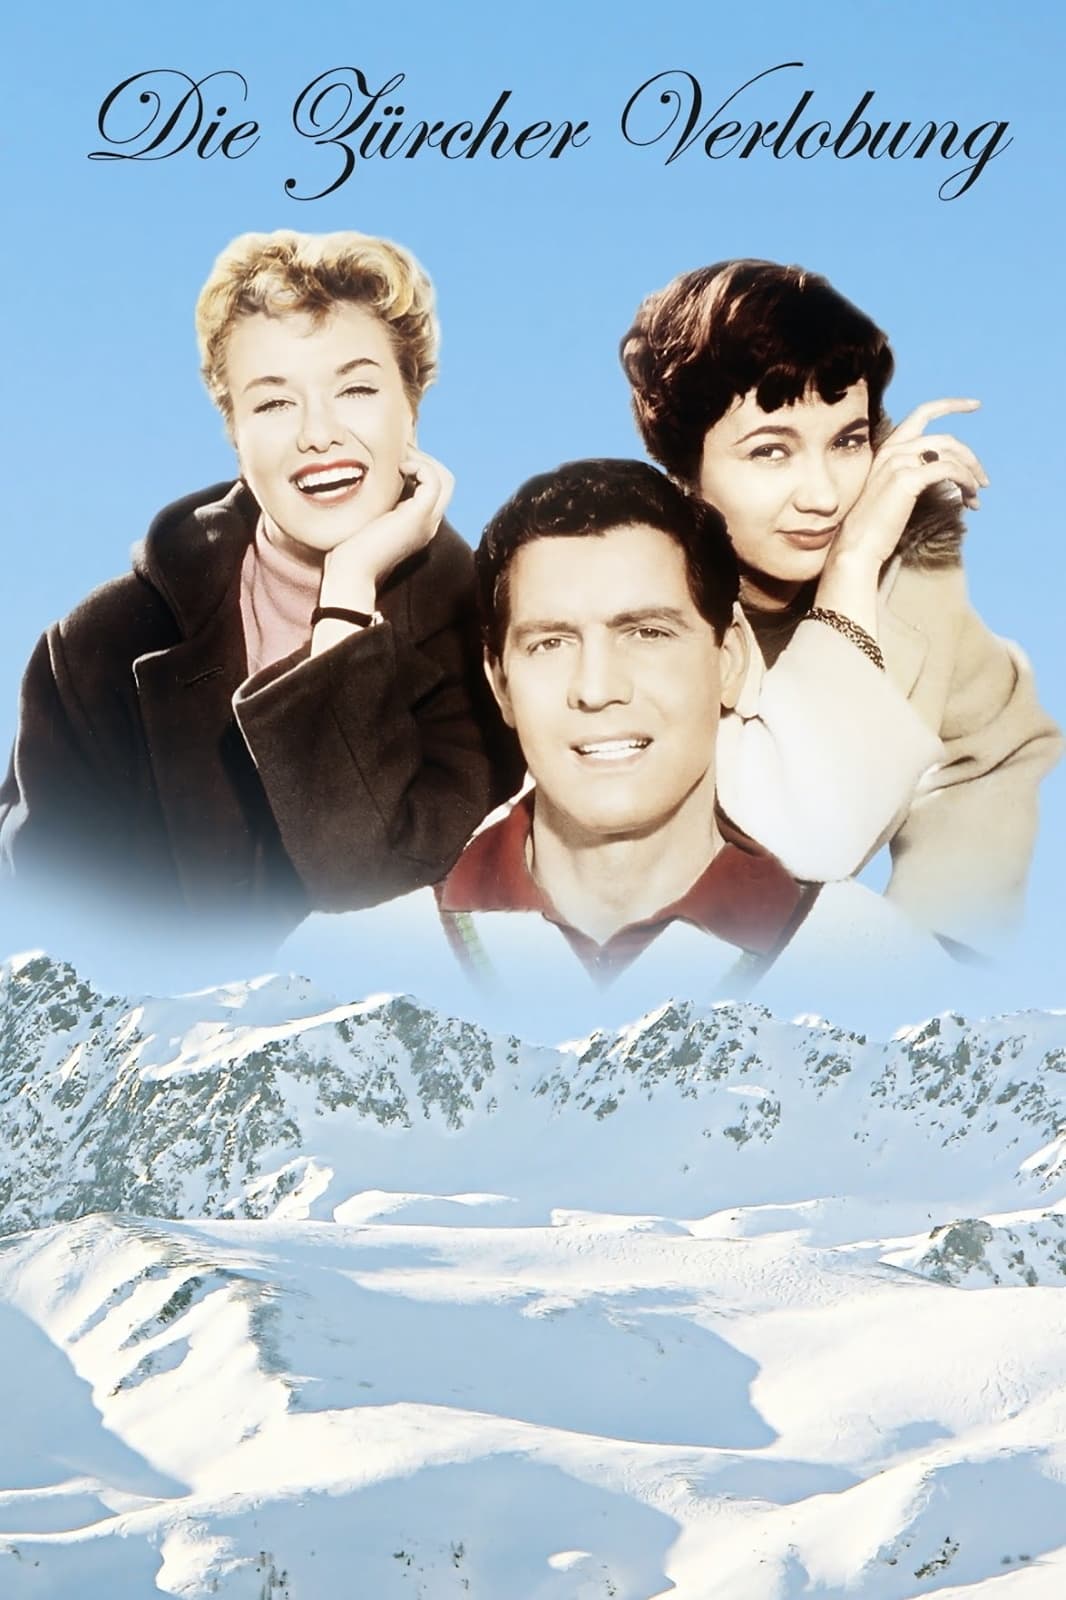 Die Zürcher Verlobung (1957) German movie poster